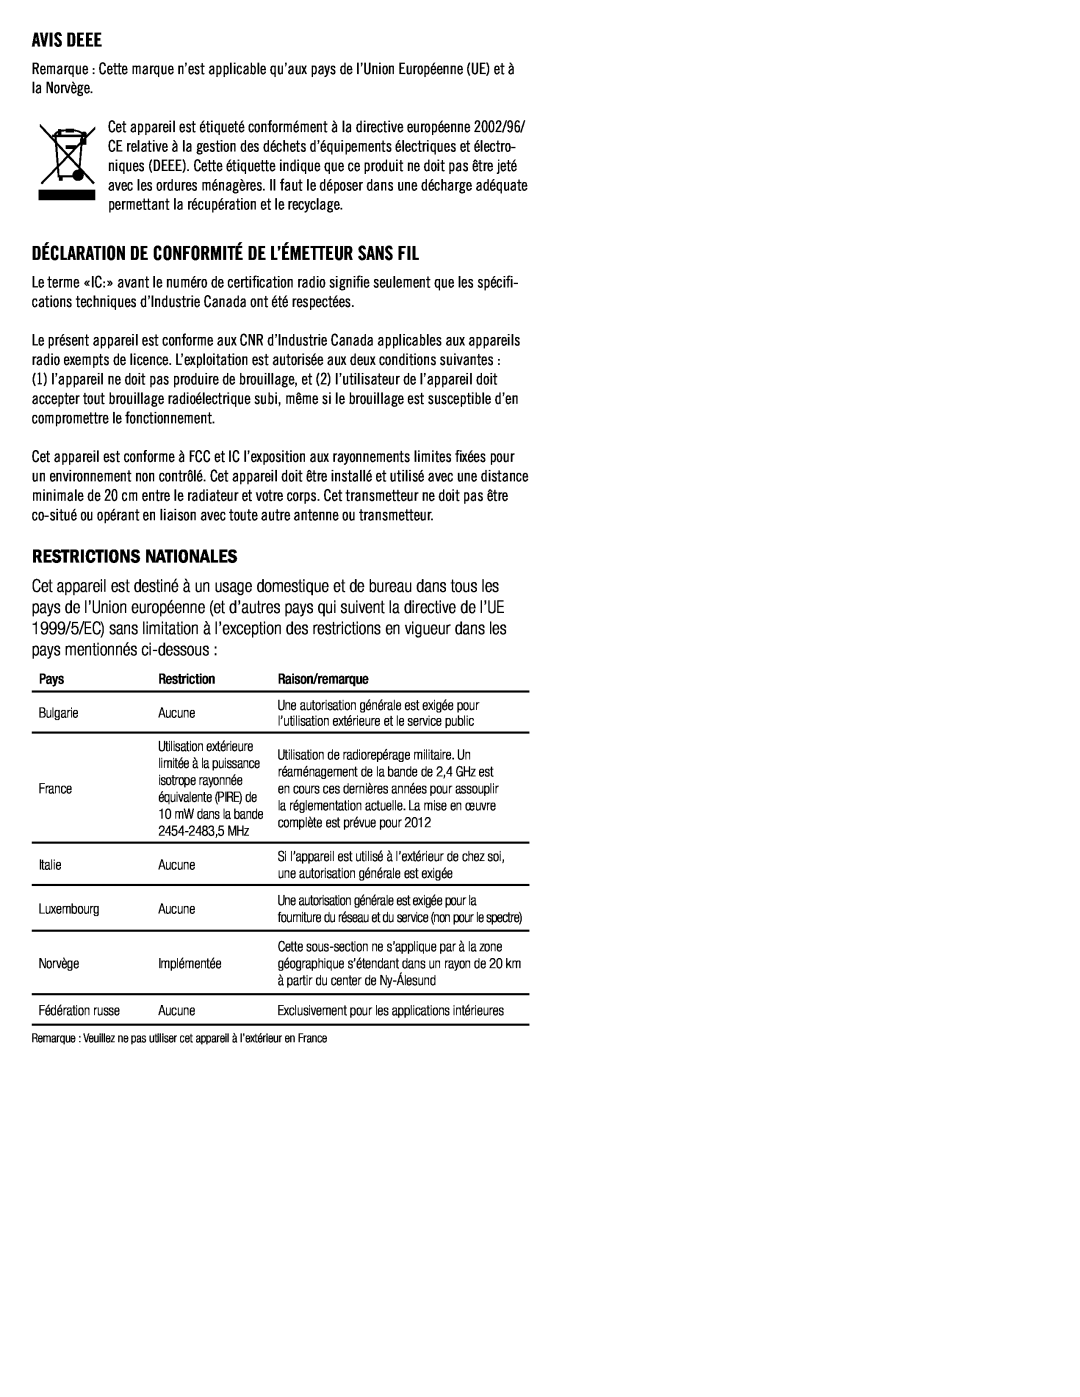 Klipsch SB3 owner manual Restrictions Nationales, Avis Deee, Déclaration De Conformité De L’Émetteur Sans Fil 